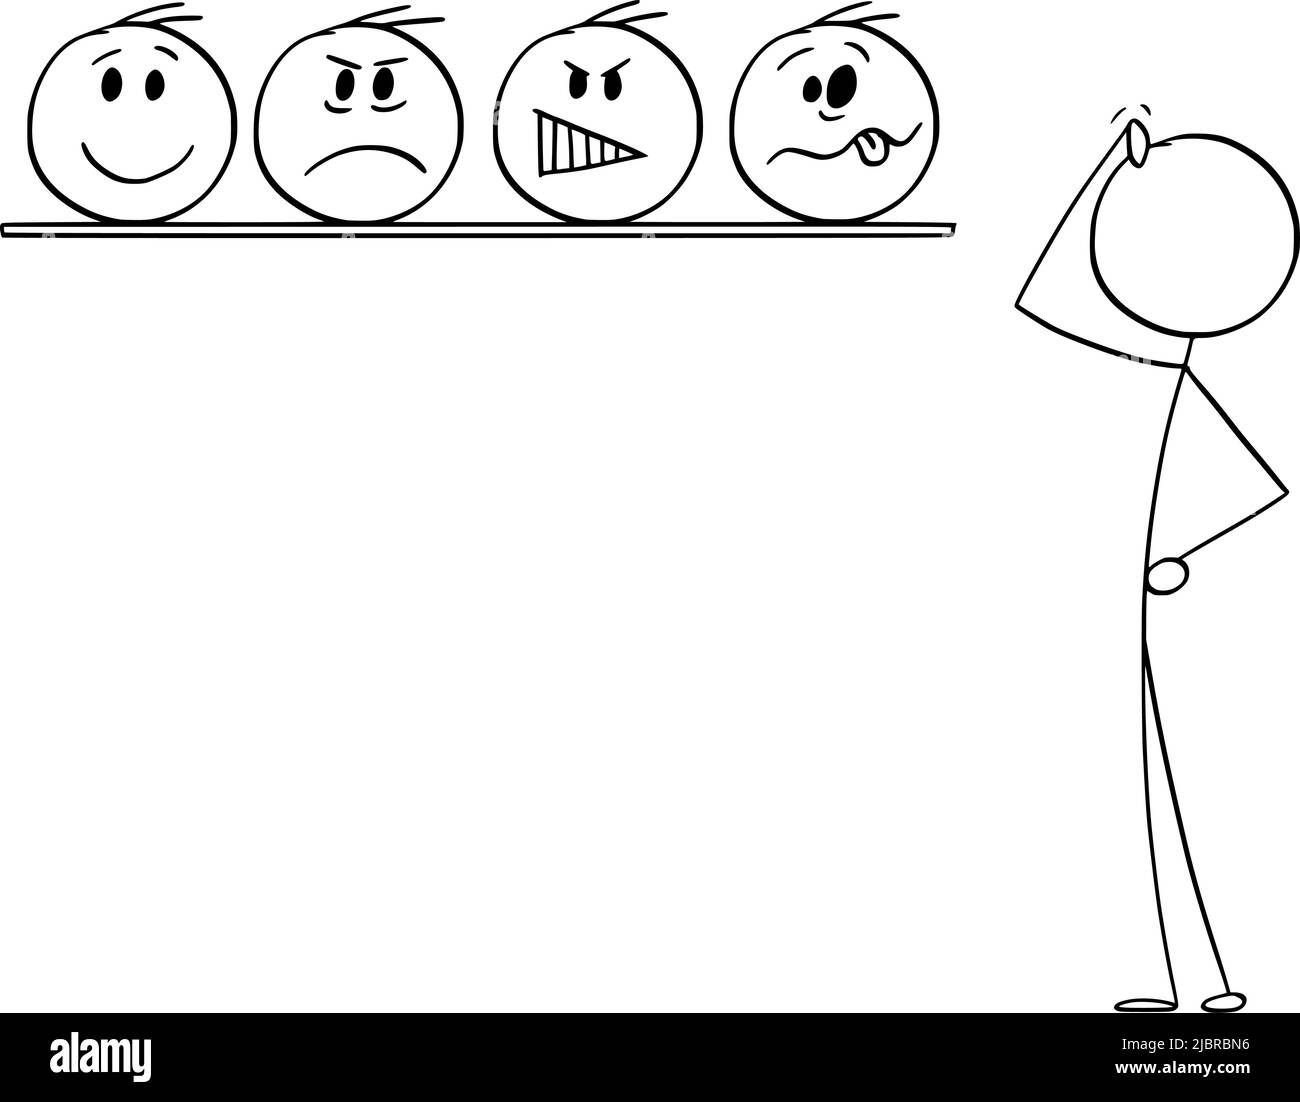 Entscheiden Sie Über Emotion, Wählen Sie Ihr Gesicht, Vektor Cartoon Stick Abbildung Stock Vektor